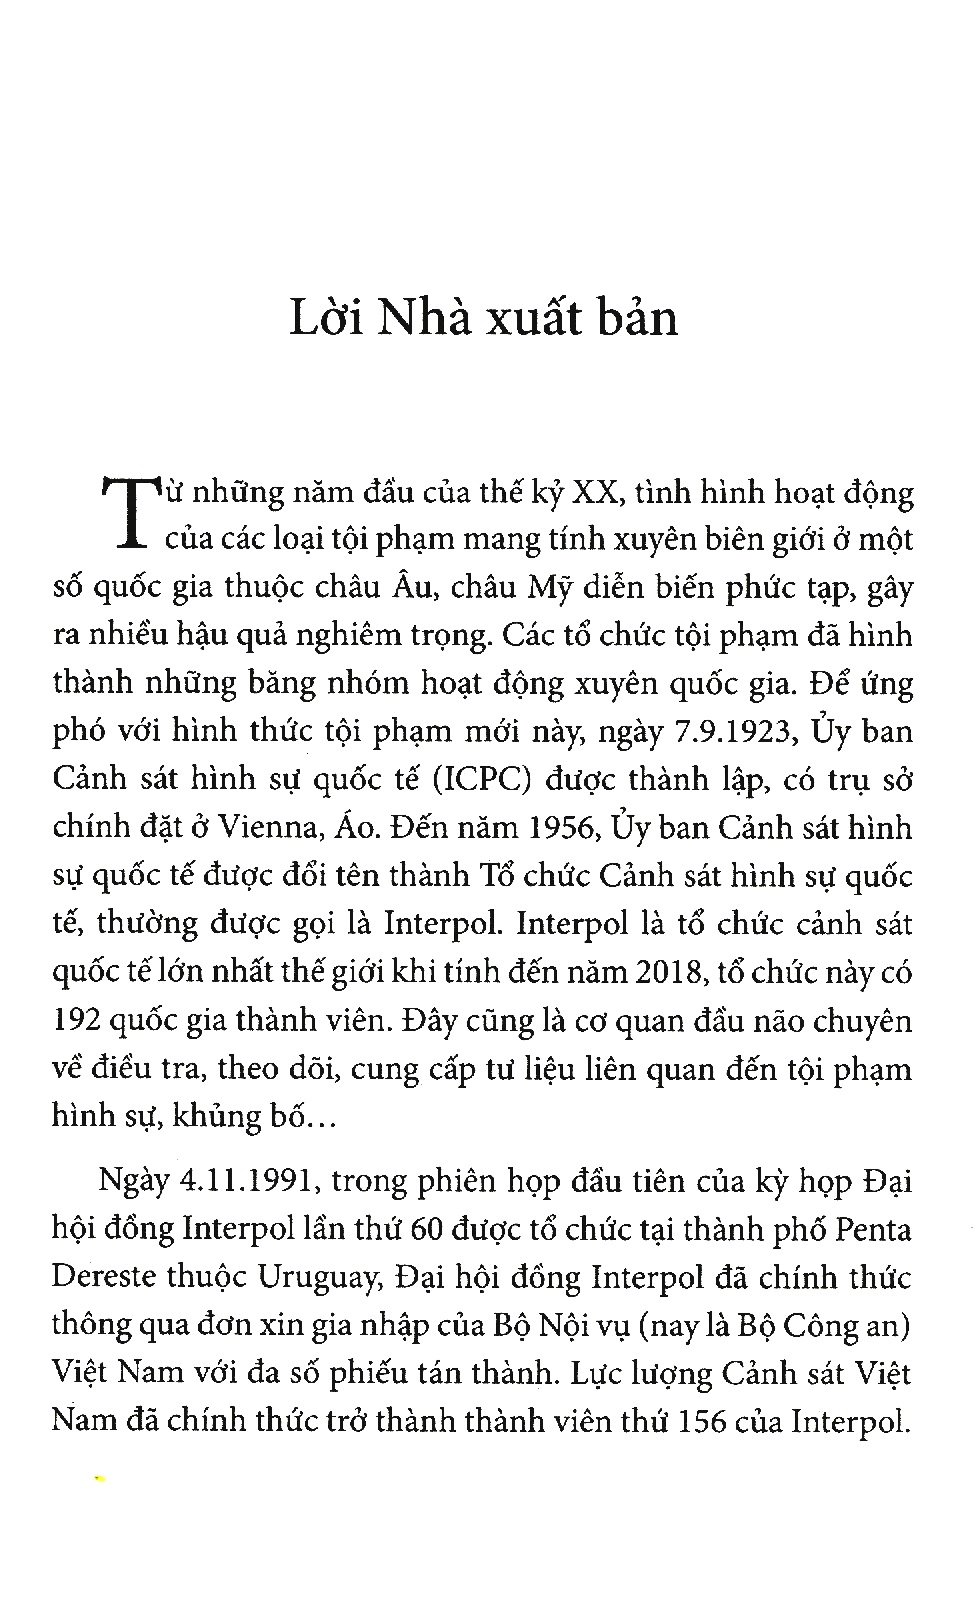 Interpol Việt Nam - Những Chiến Công Vpi.Com PDF